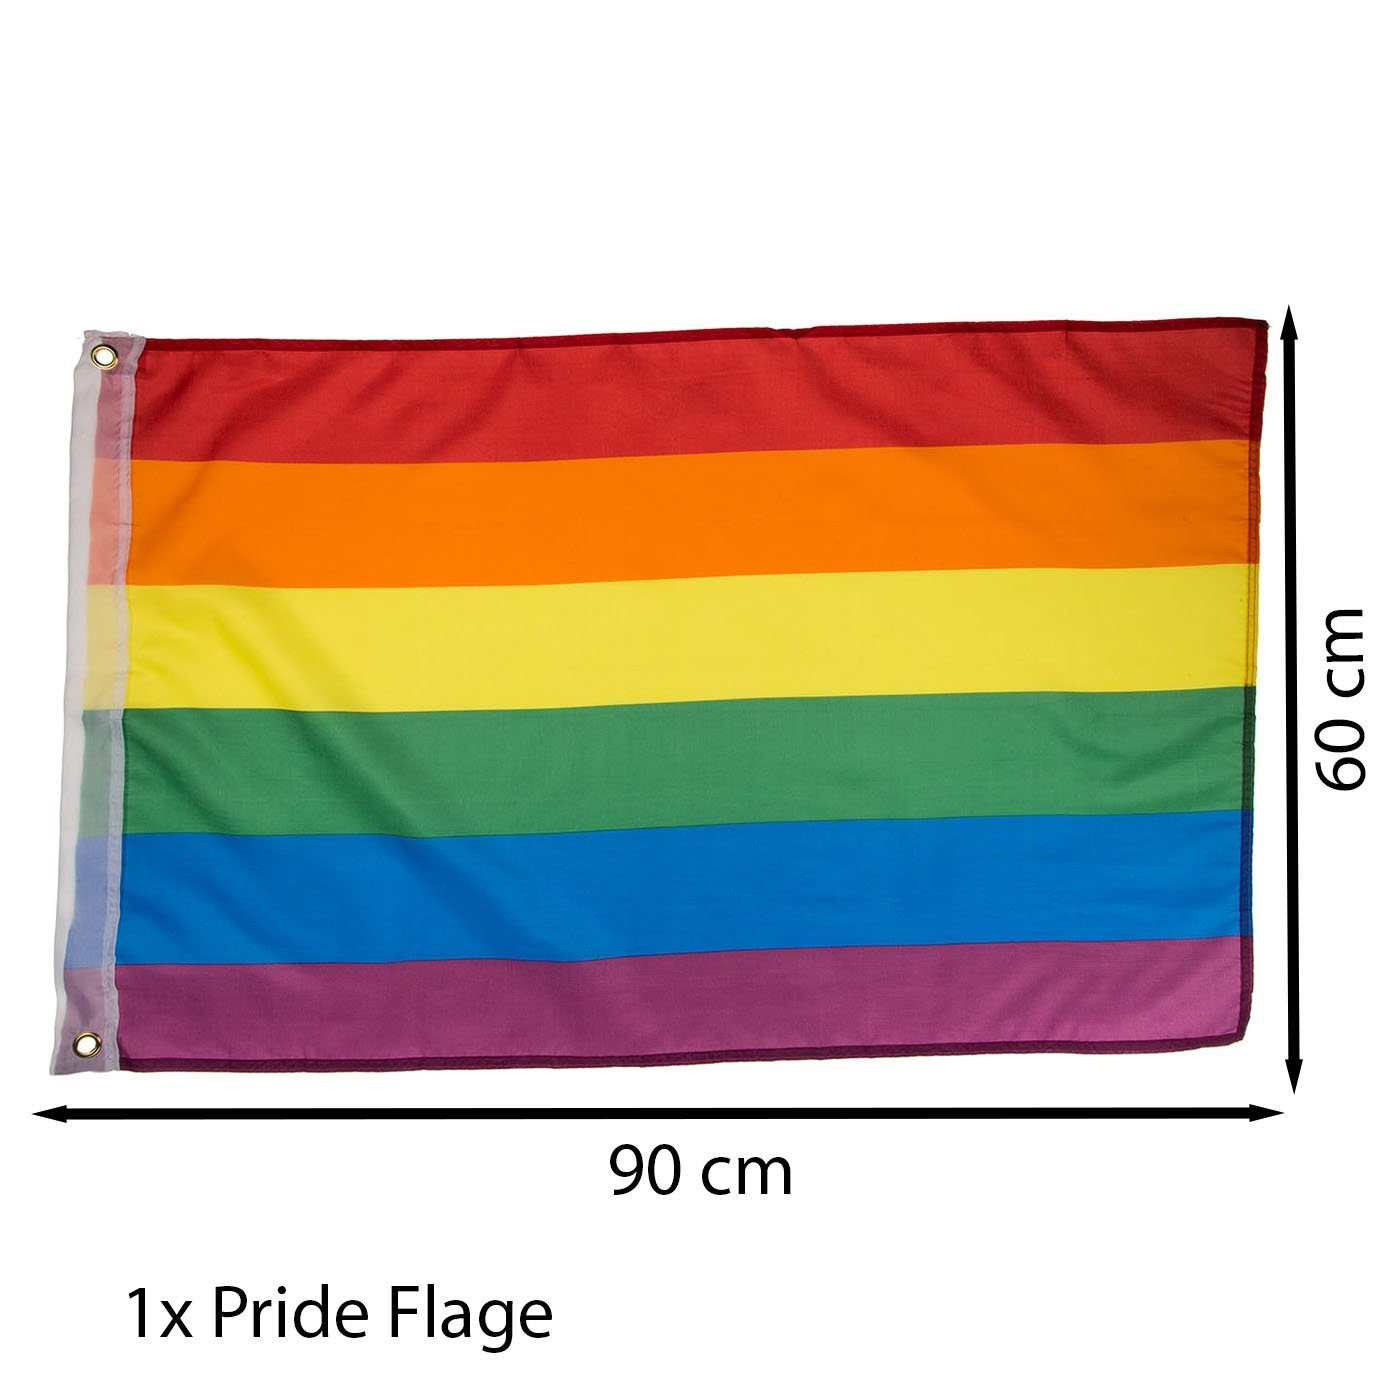 ReWu Einkaufsbeutel ReWu CSD Regenbogen SET Pride